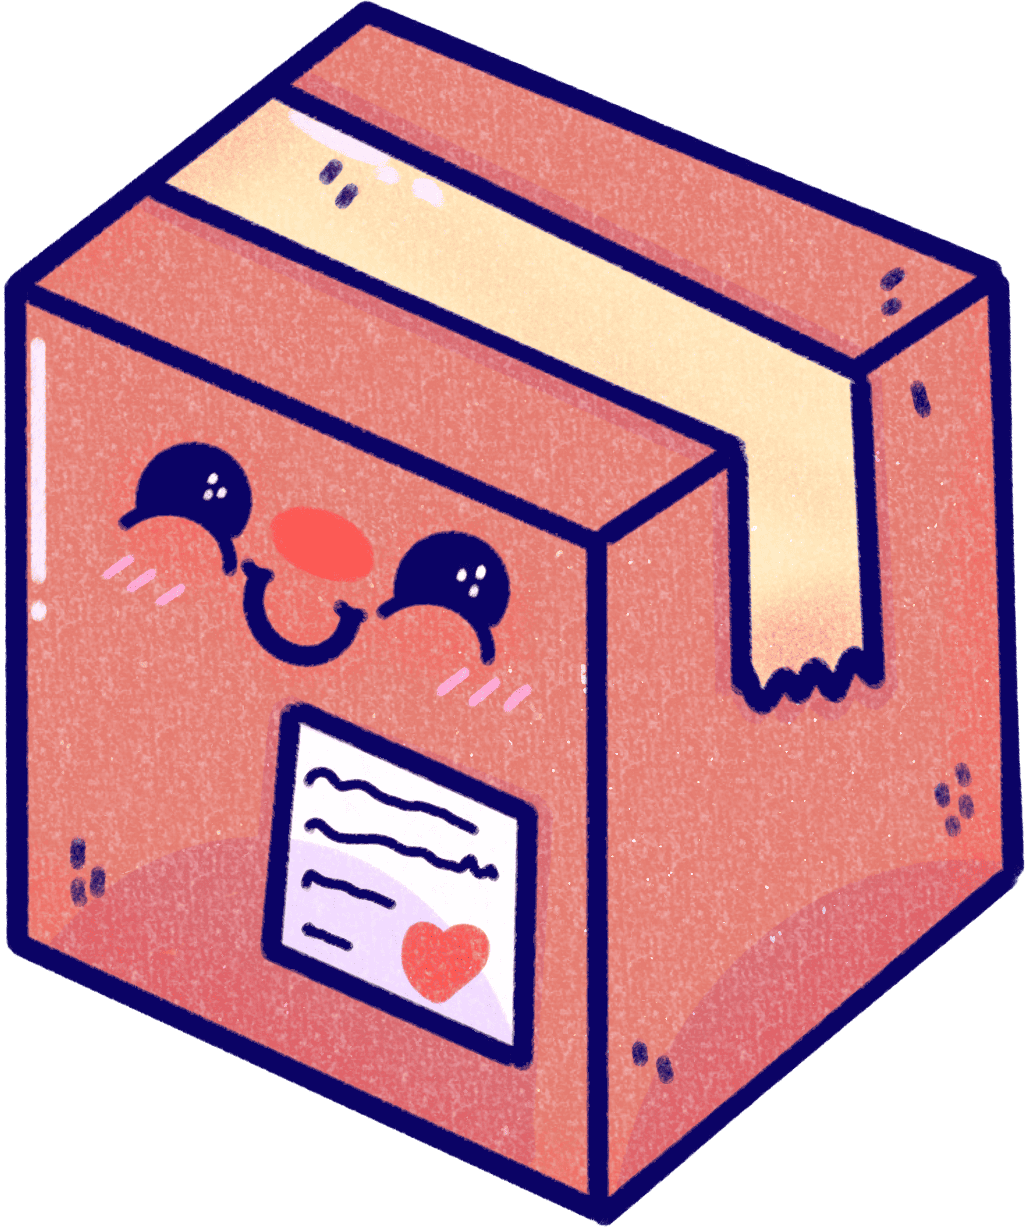 ilustracion de una caja de envios kawaii con carita feliz